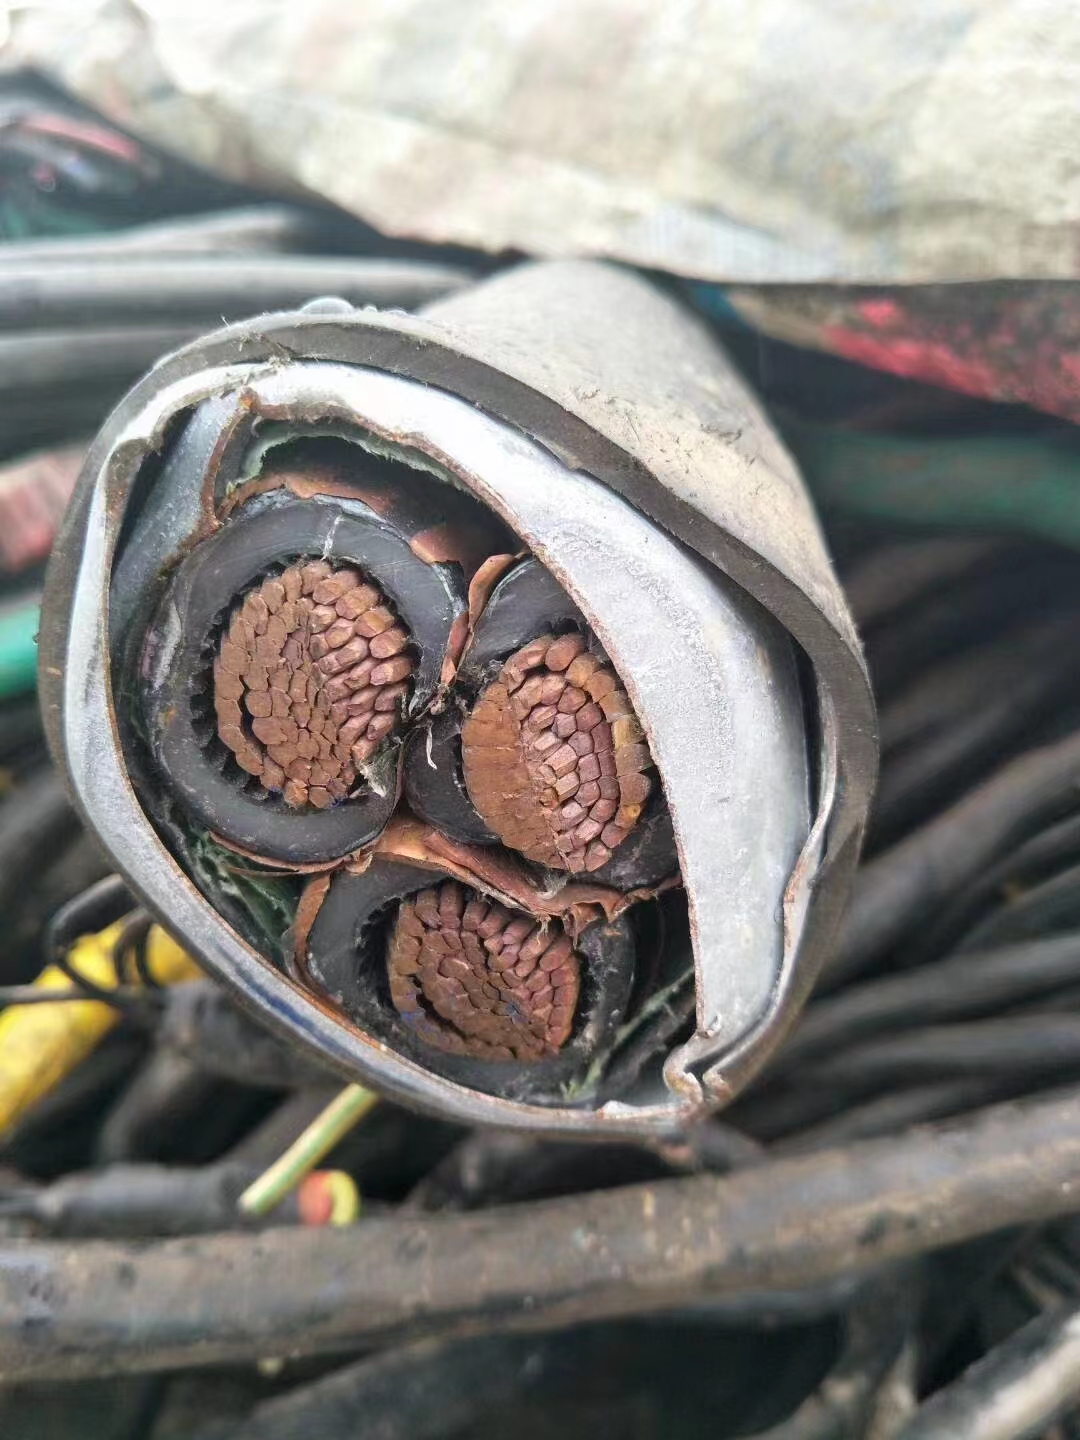 唐山市废旧电缆回收多少钱一吨二手电缆电力物资回收公司今日价格美丽展现